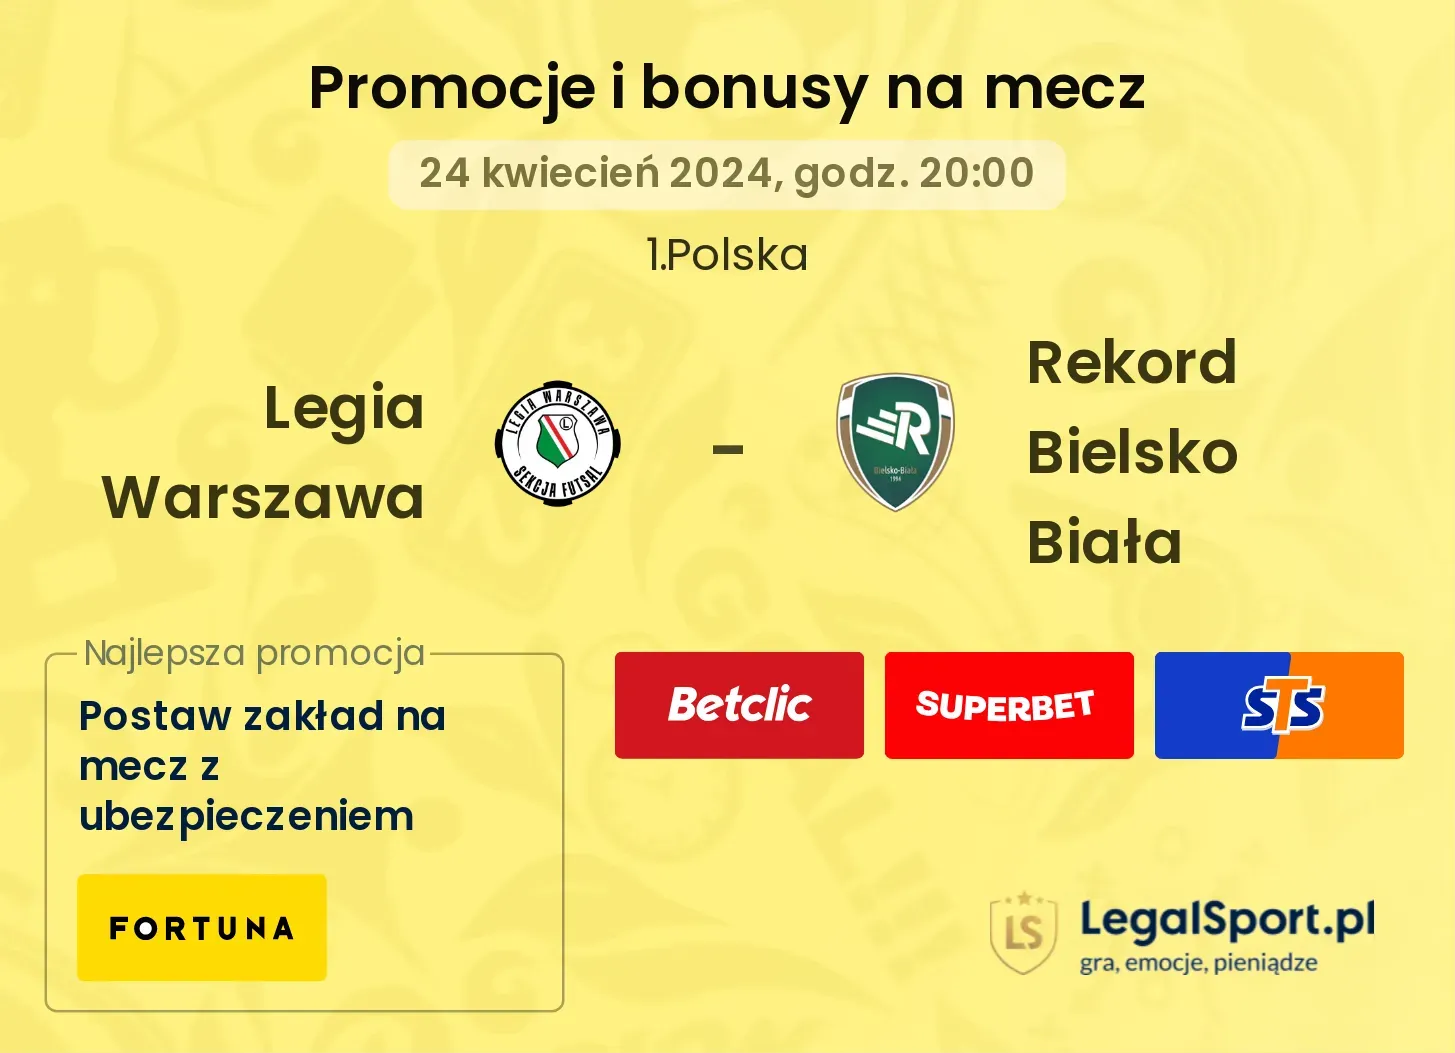 Legia Warszawa - Rekord Bielsko Biała promocje bonusy na mecz